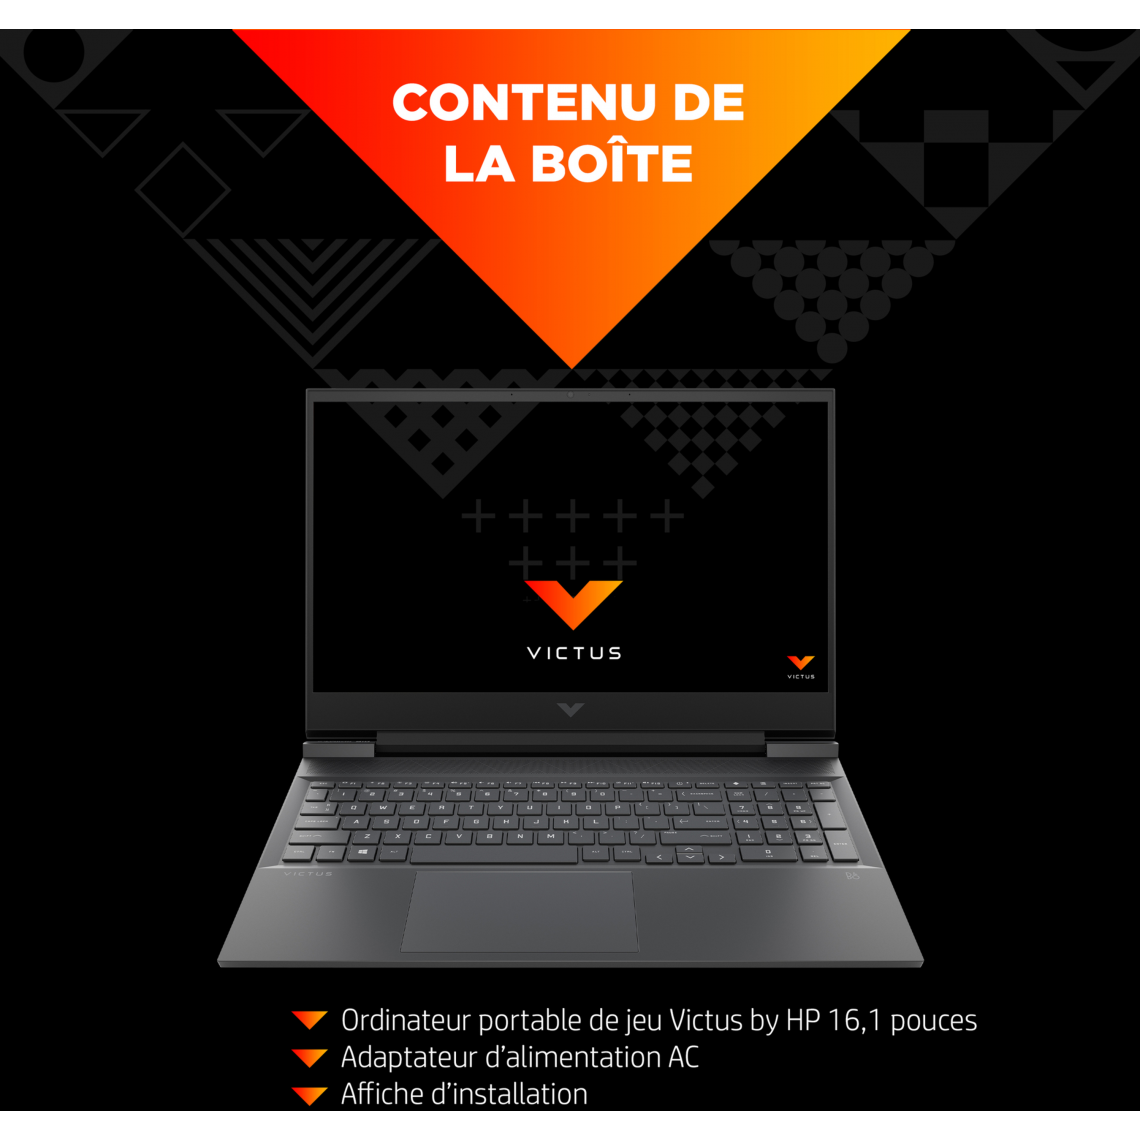 Achat / vente PC Portable au meilleur prix au Maroc